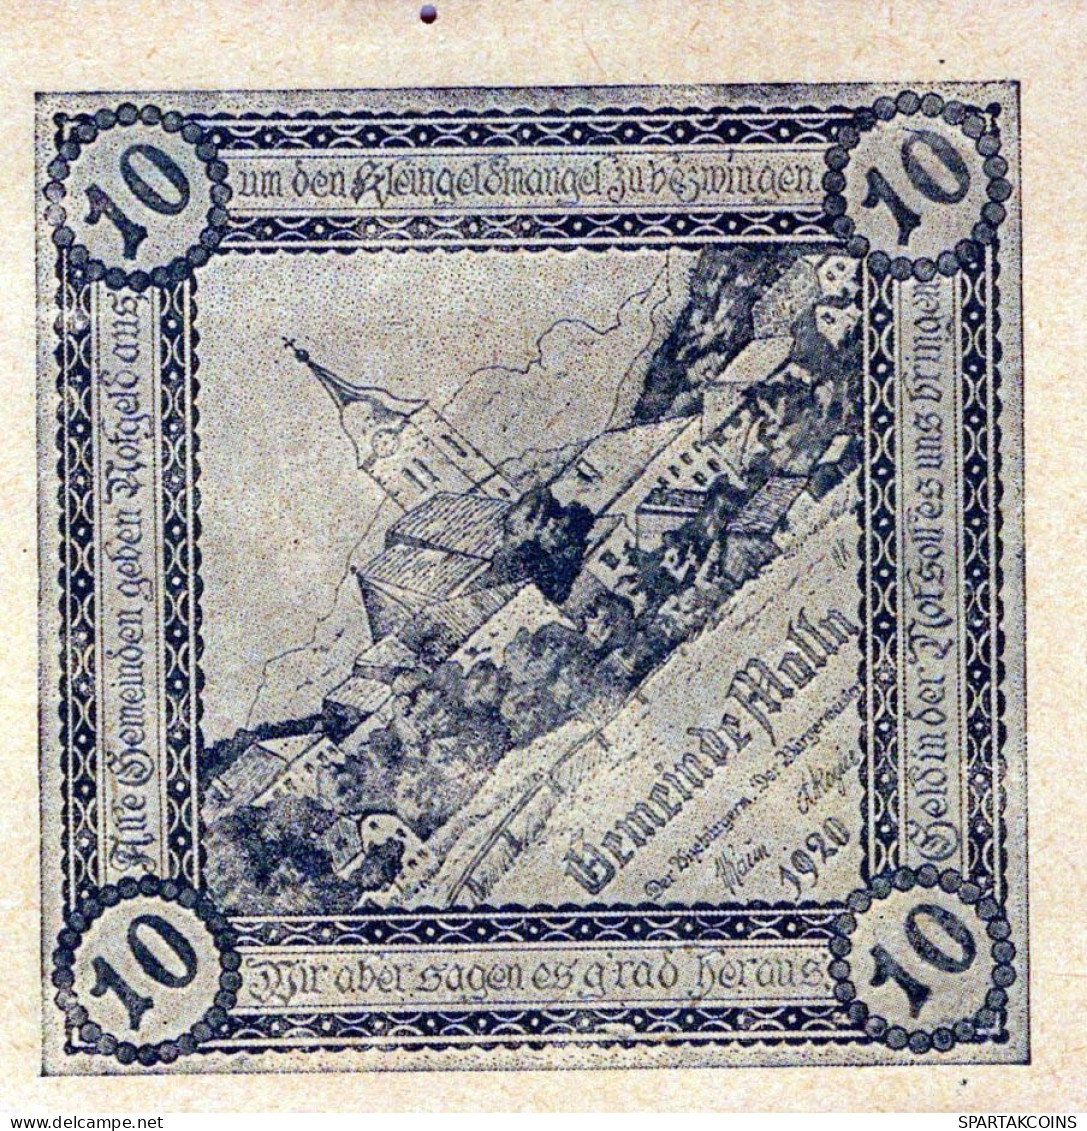 10 HELLER 1920 Stadt MOLLN Oberösterreich Österreich Notgeld Banknote #PD820 - [11] Local Banknote Issues